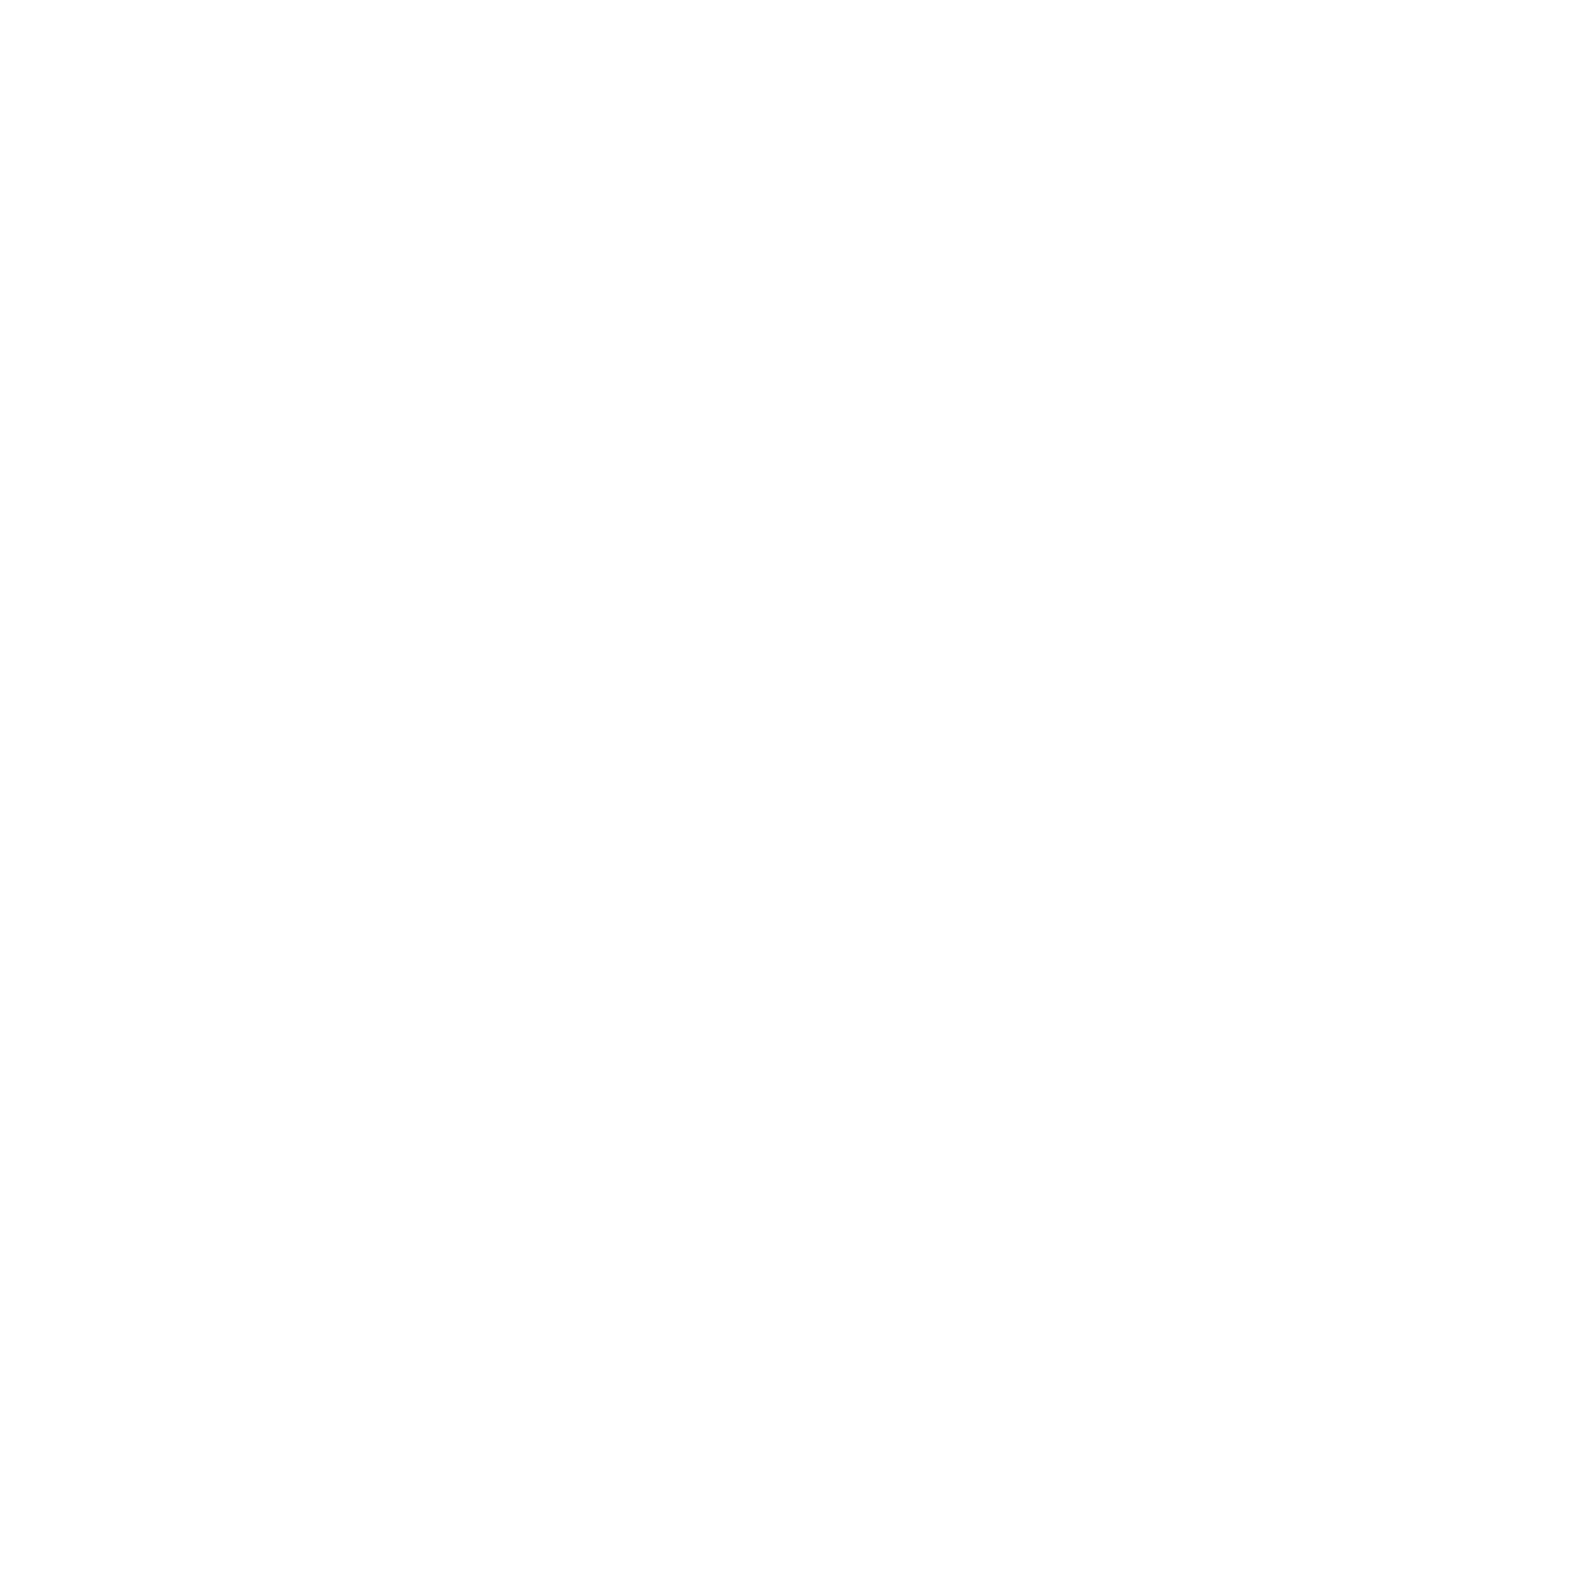 LTIMindtree logo pour fonds sombres (PNG transparent)